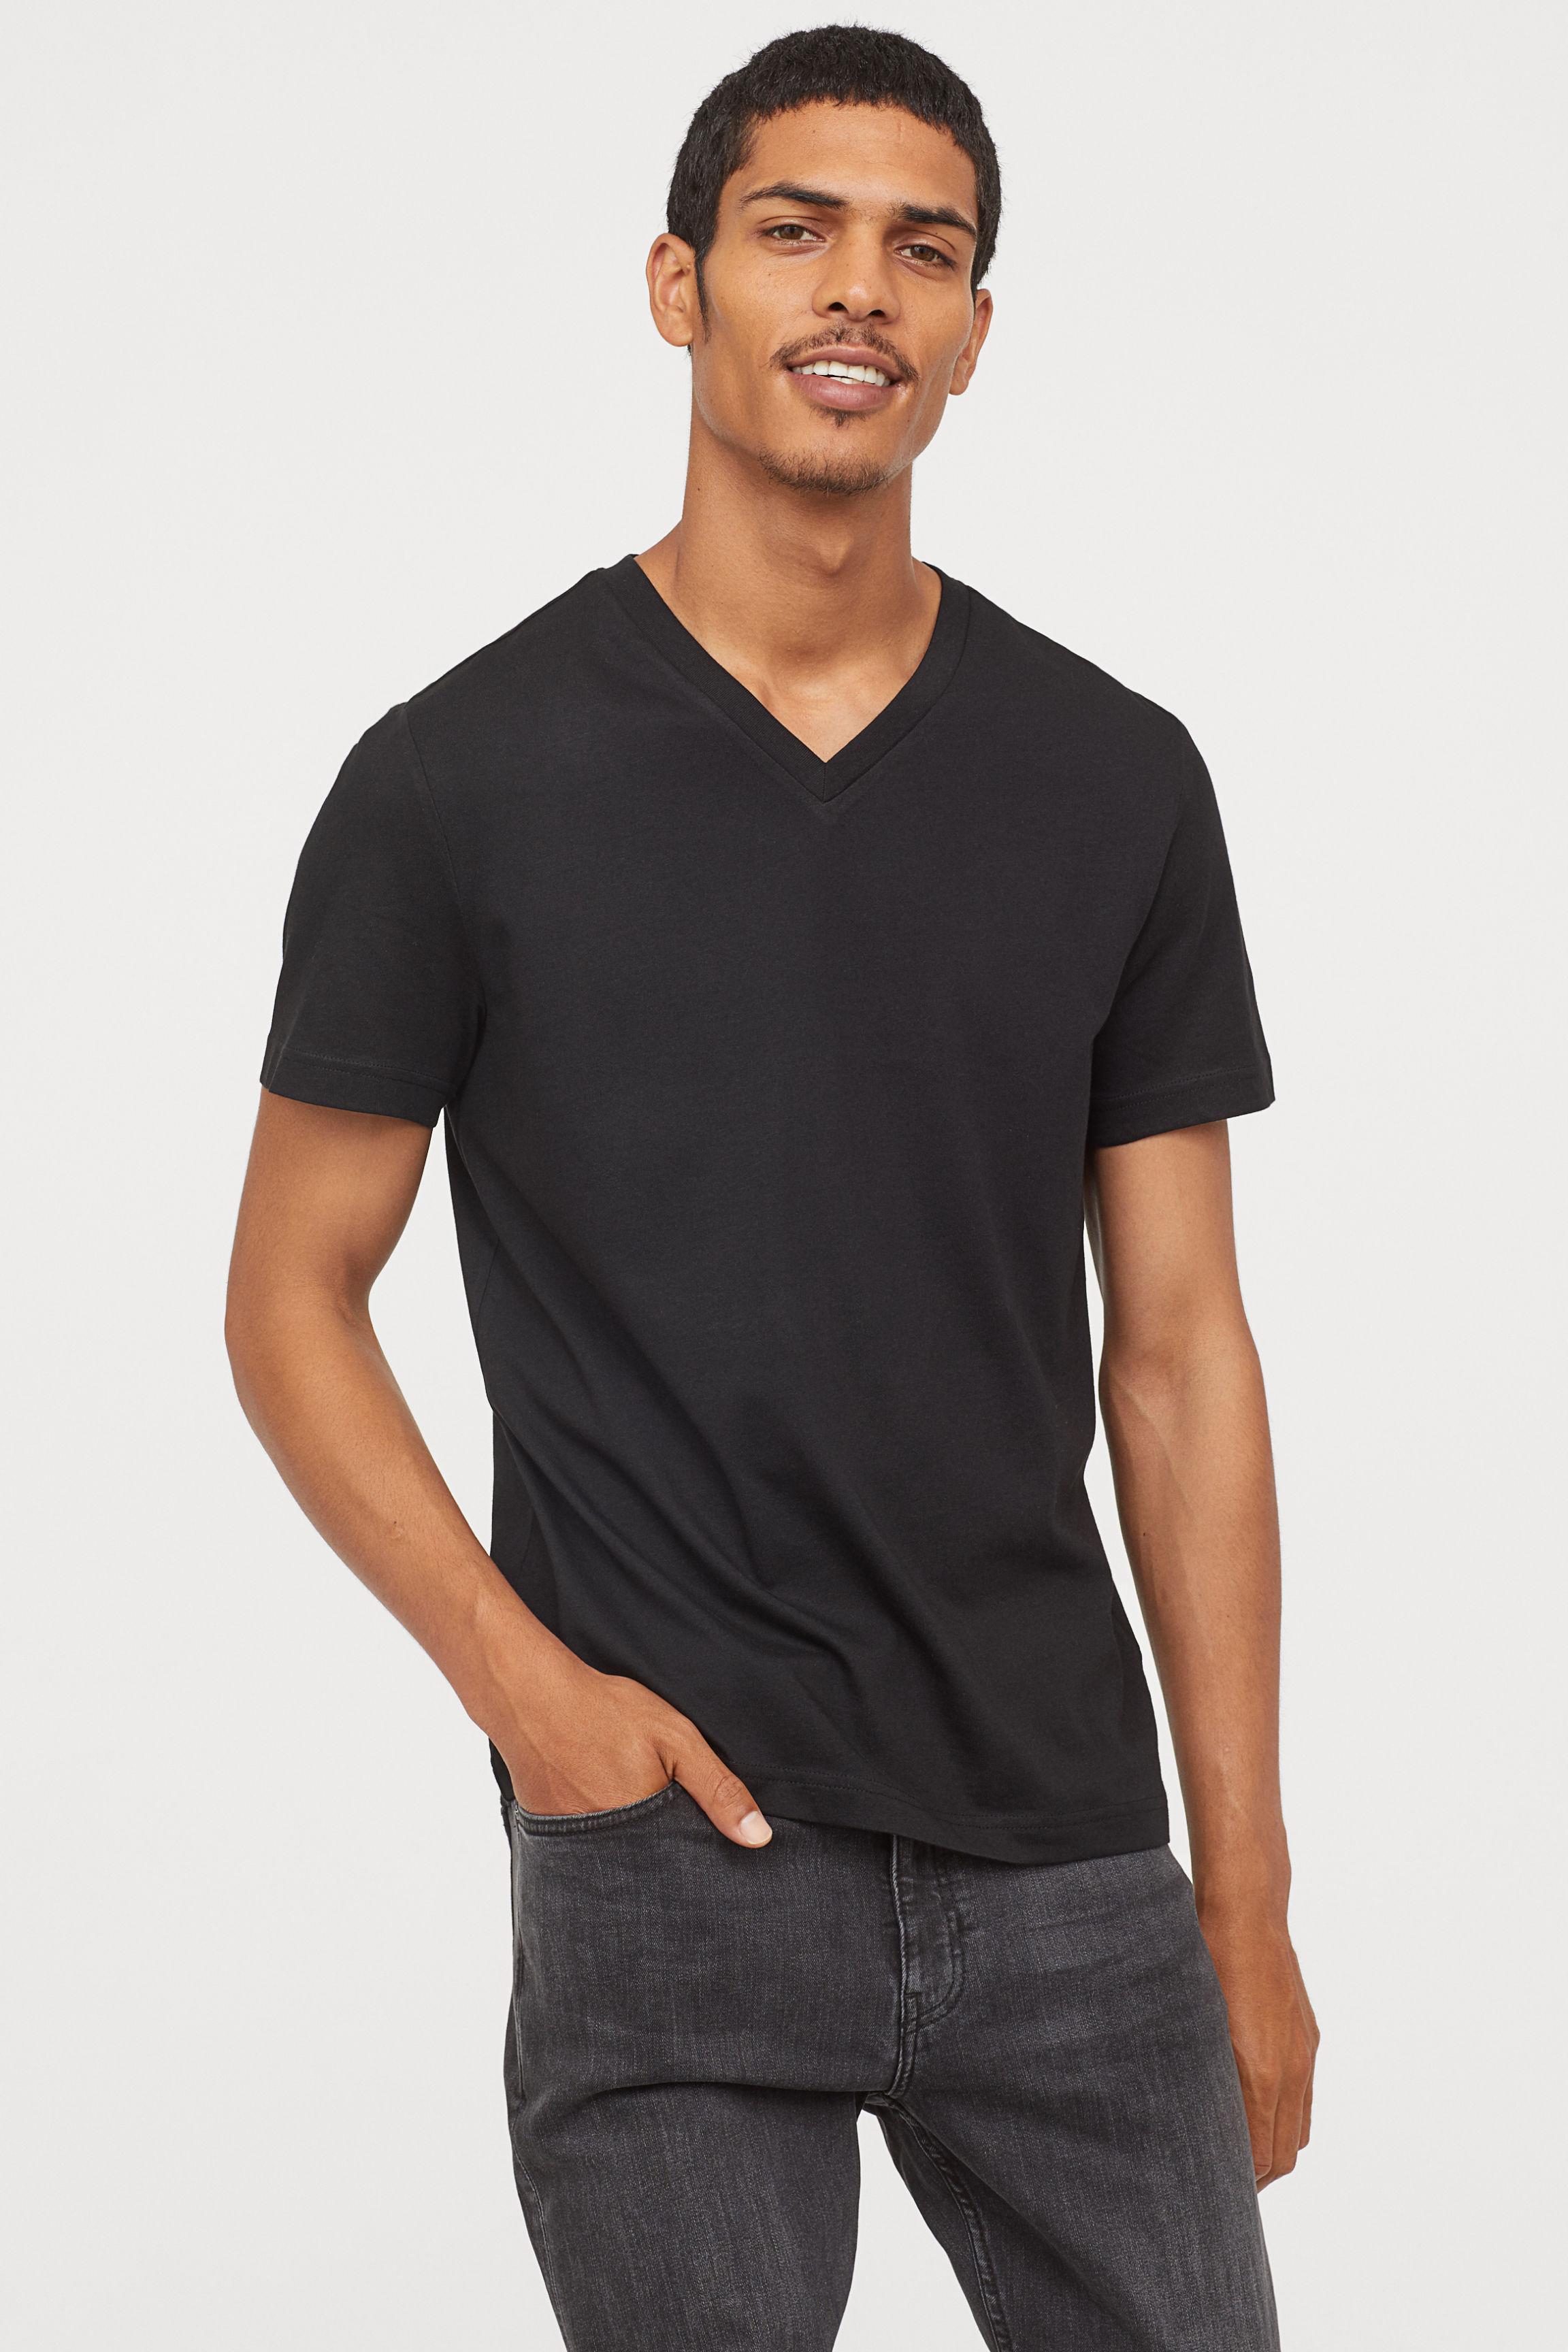 H&M Regular Fit V-neck T-shirt in Black for Men - Lyst